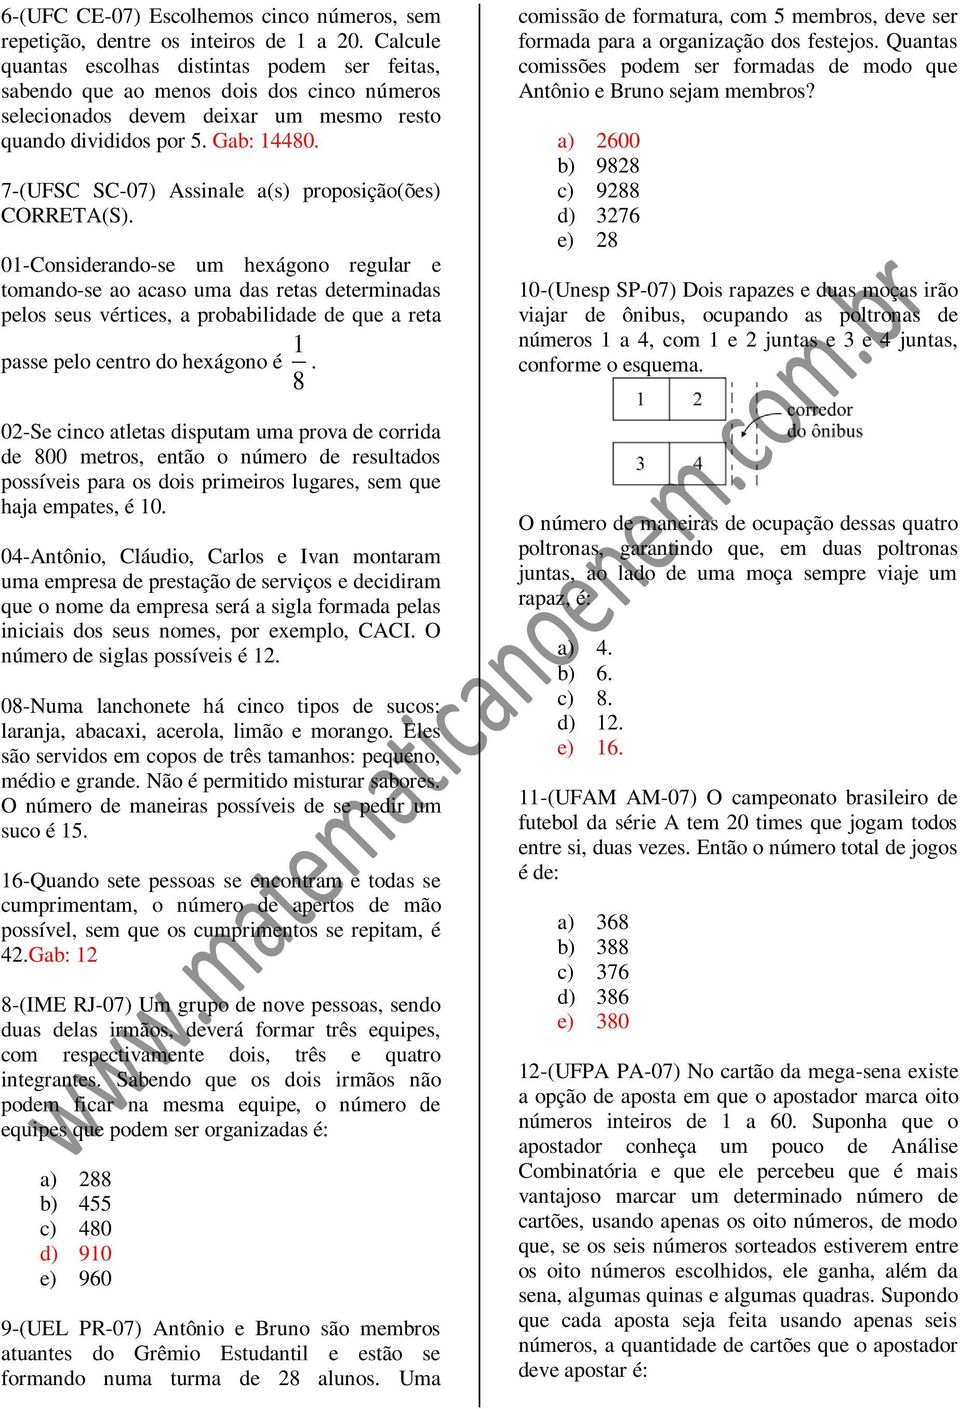 7-(UFSC SC-07) Assinale a(s) proposição(ões) CORRETA(S).